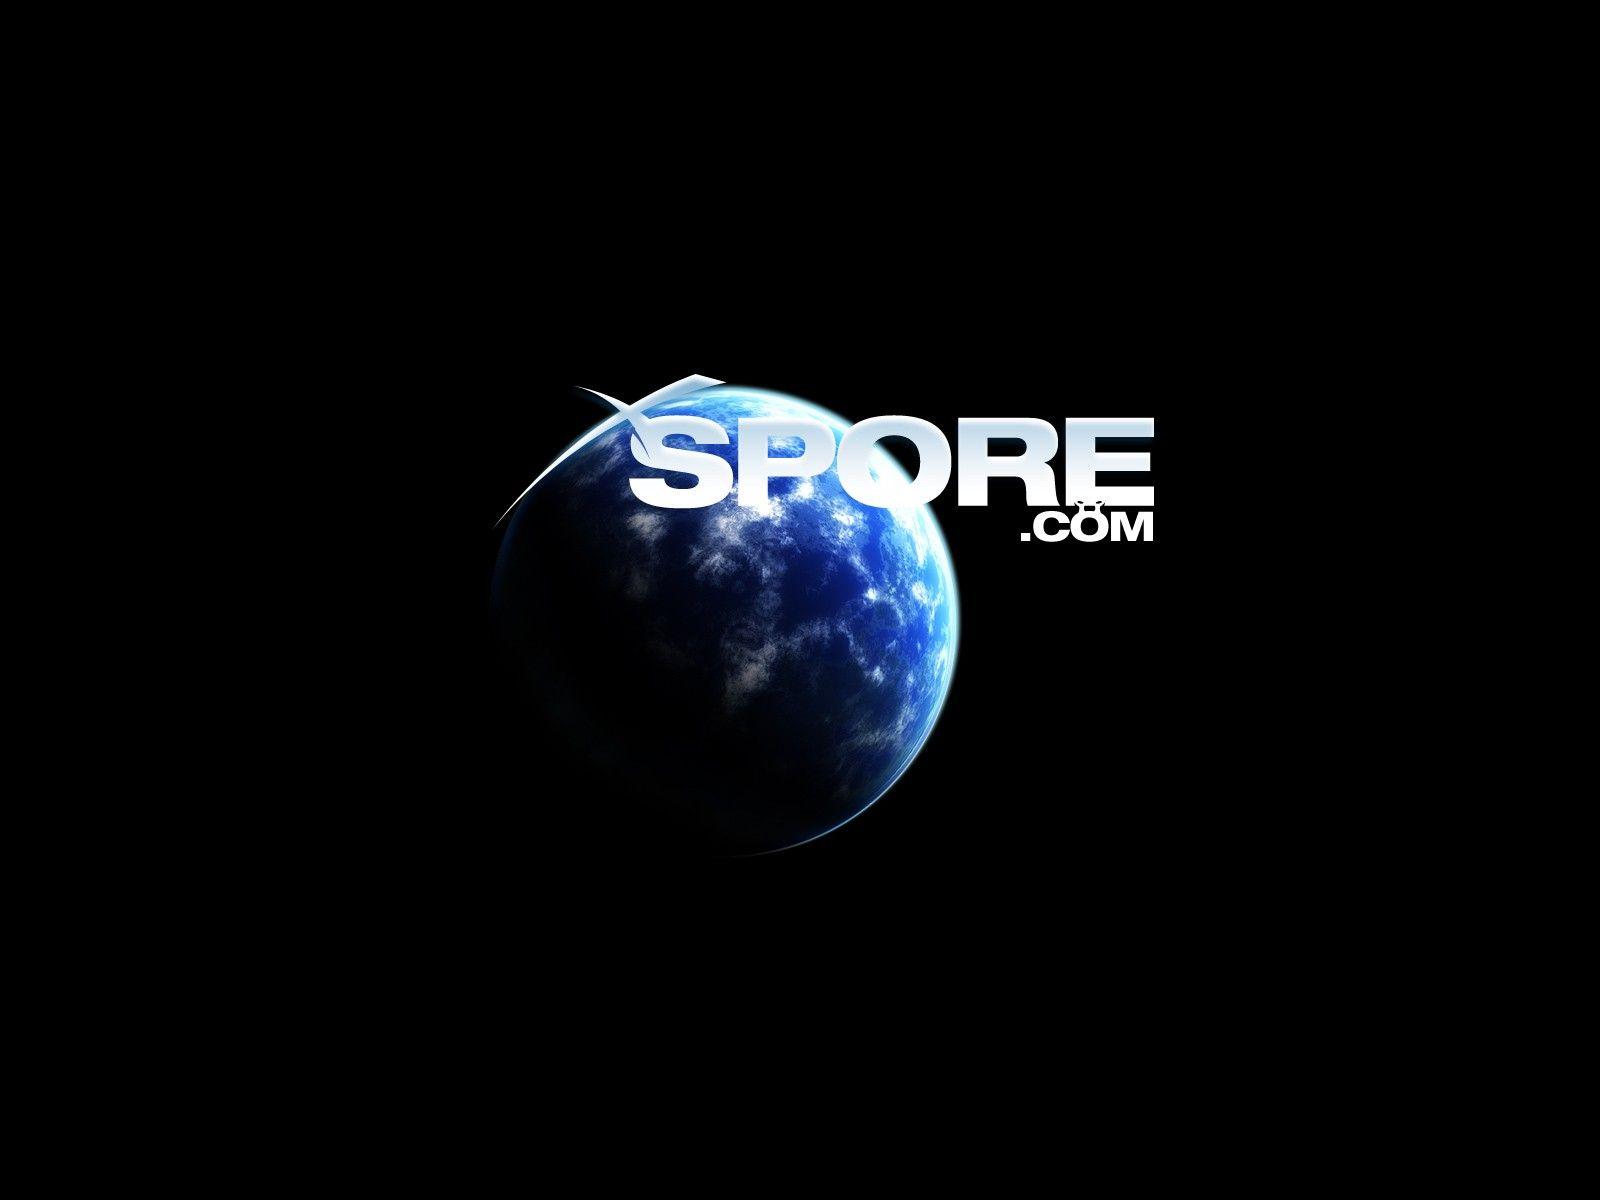 Download the Spore Wallpaper, Spore iPhone Wallpaper, Spore